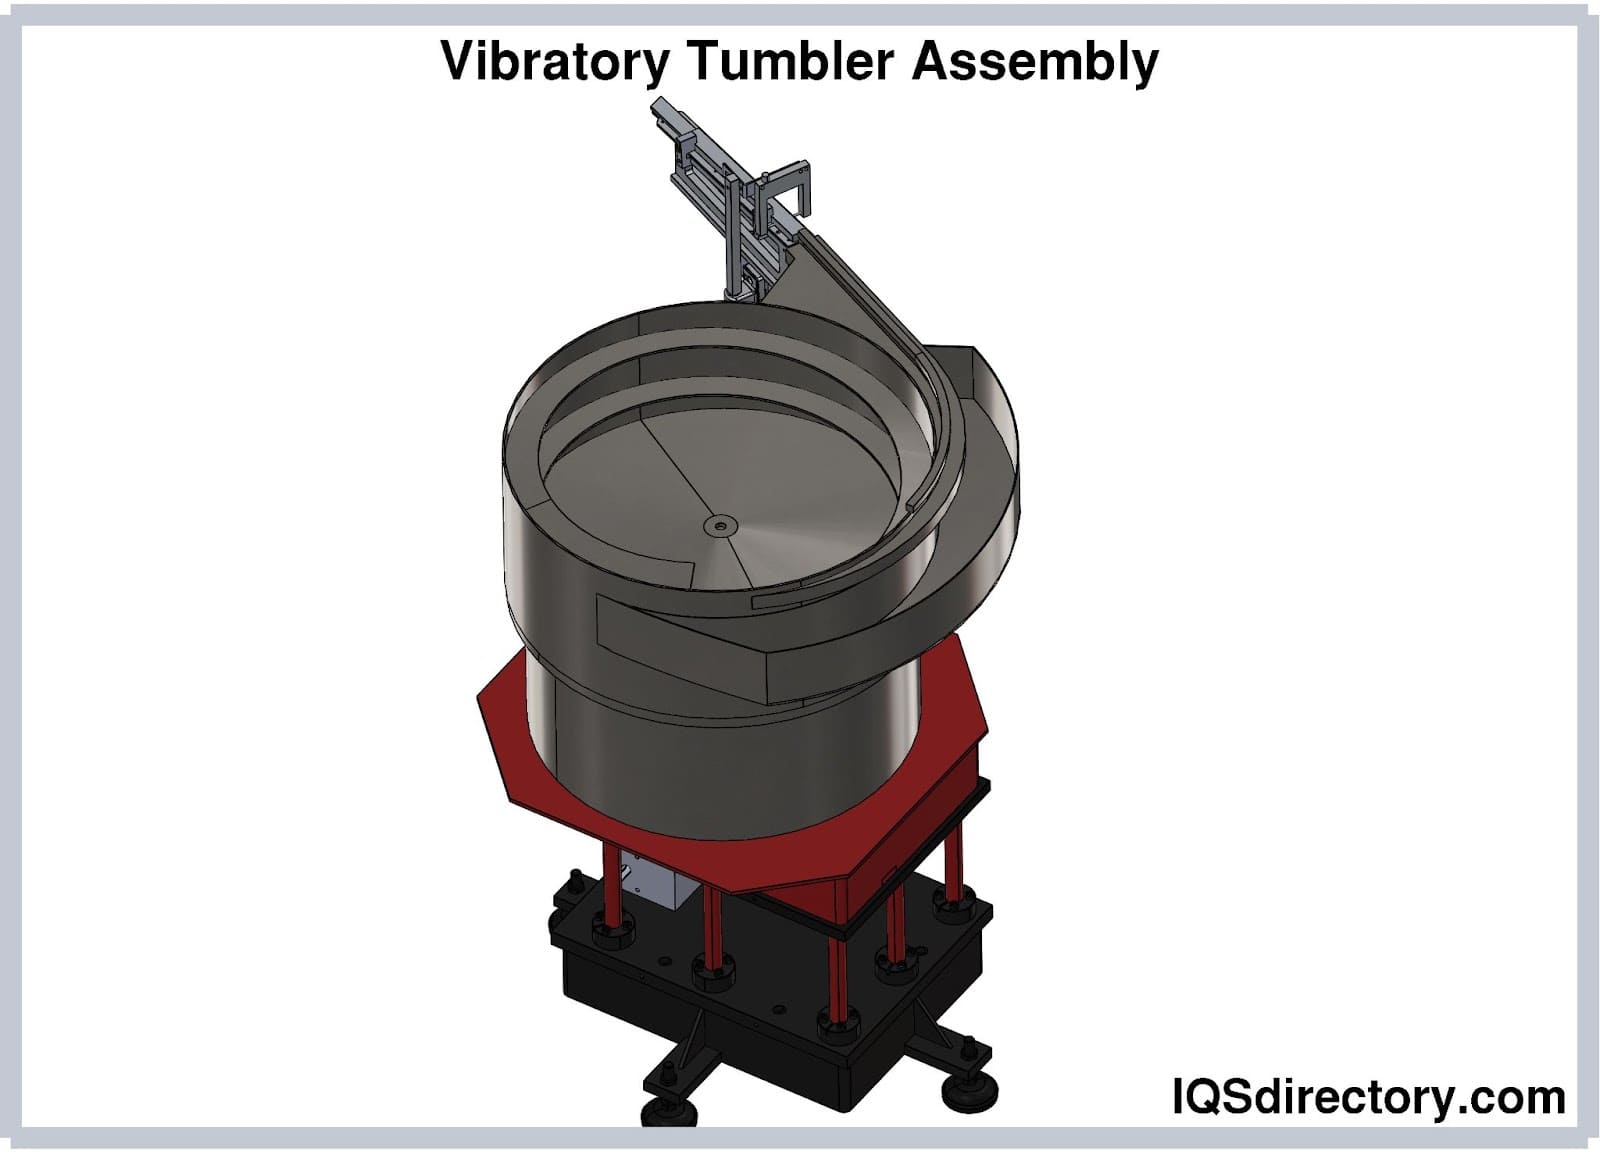 Vibratory Tumbler Assembly